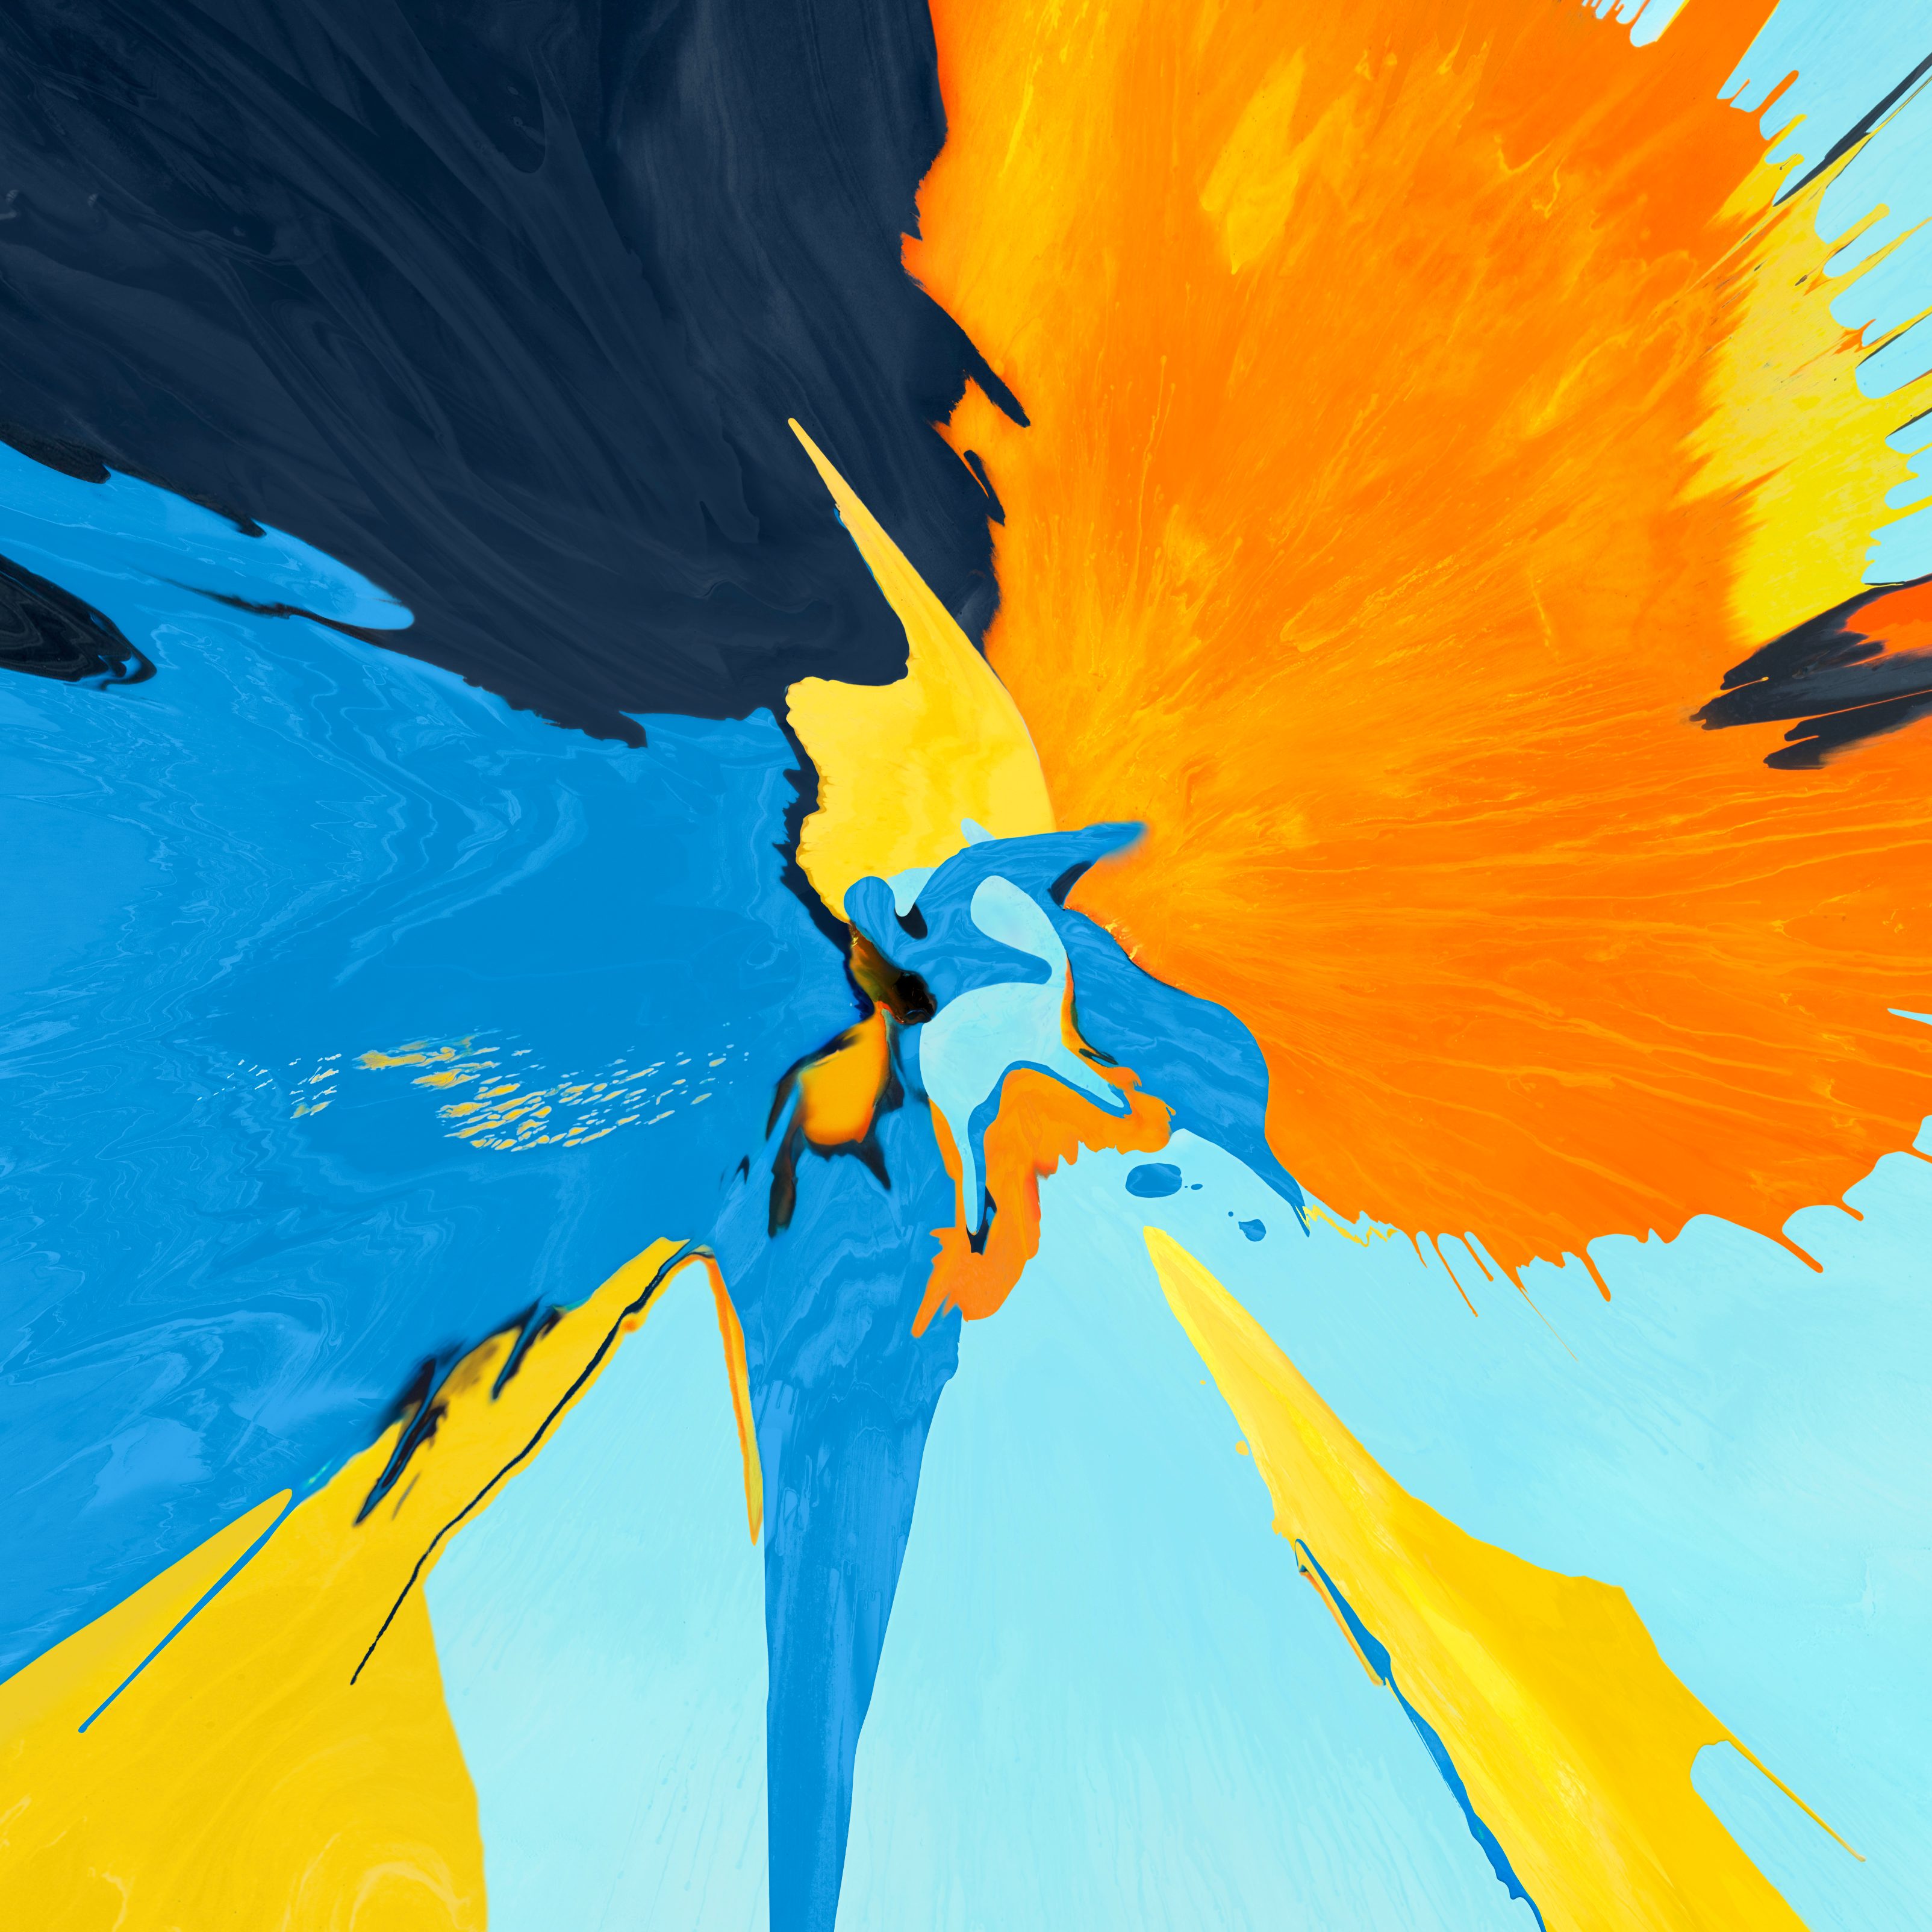 téléchargement de fond d'écran,jaune,bleu,la peinture,orange,peinture acrylique